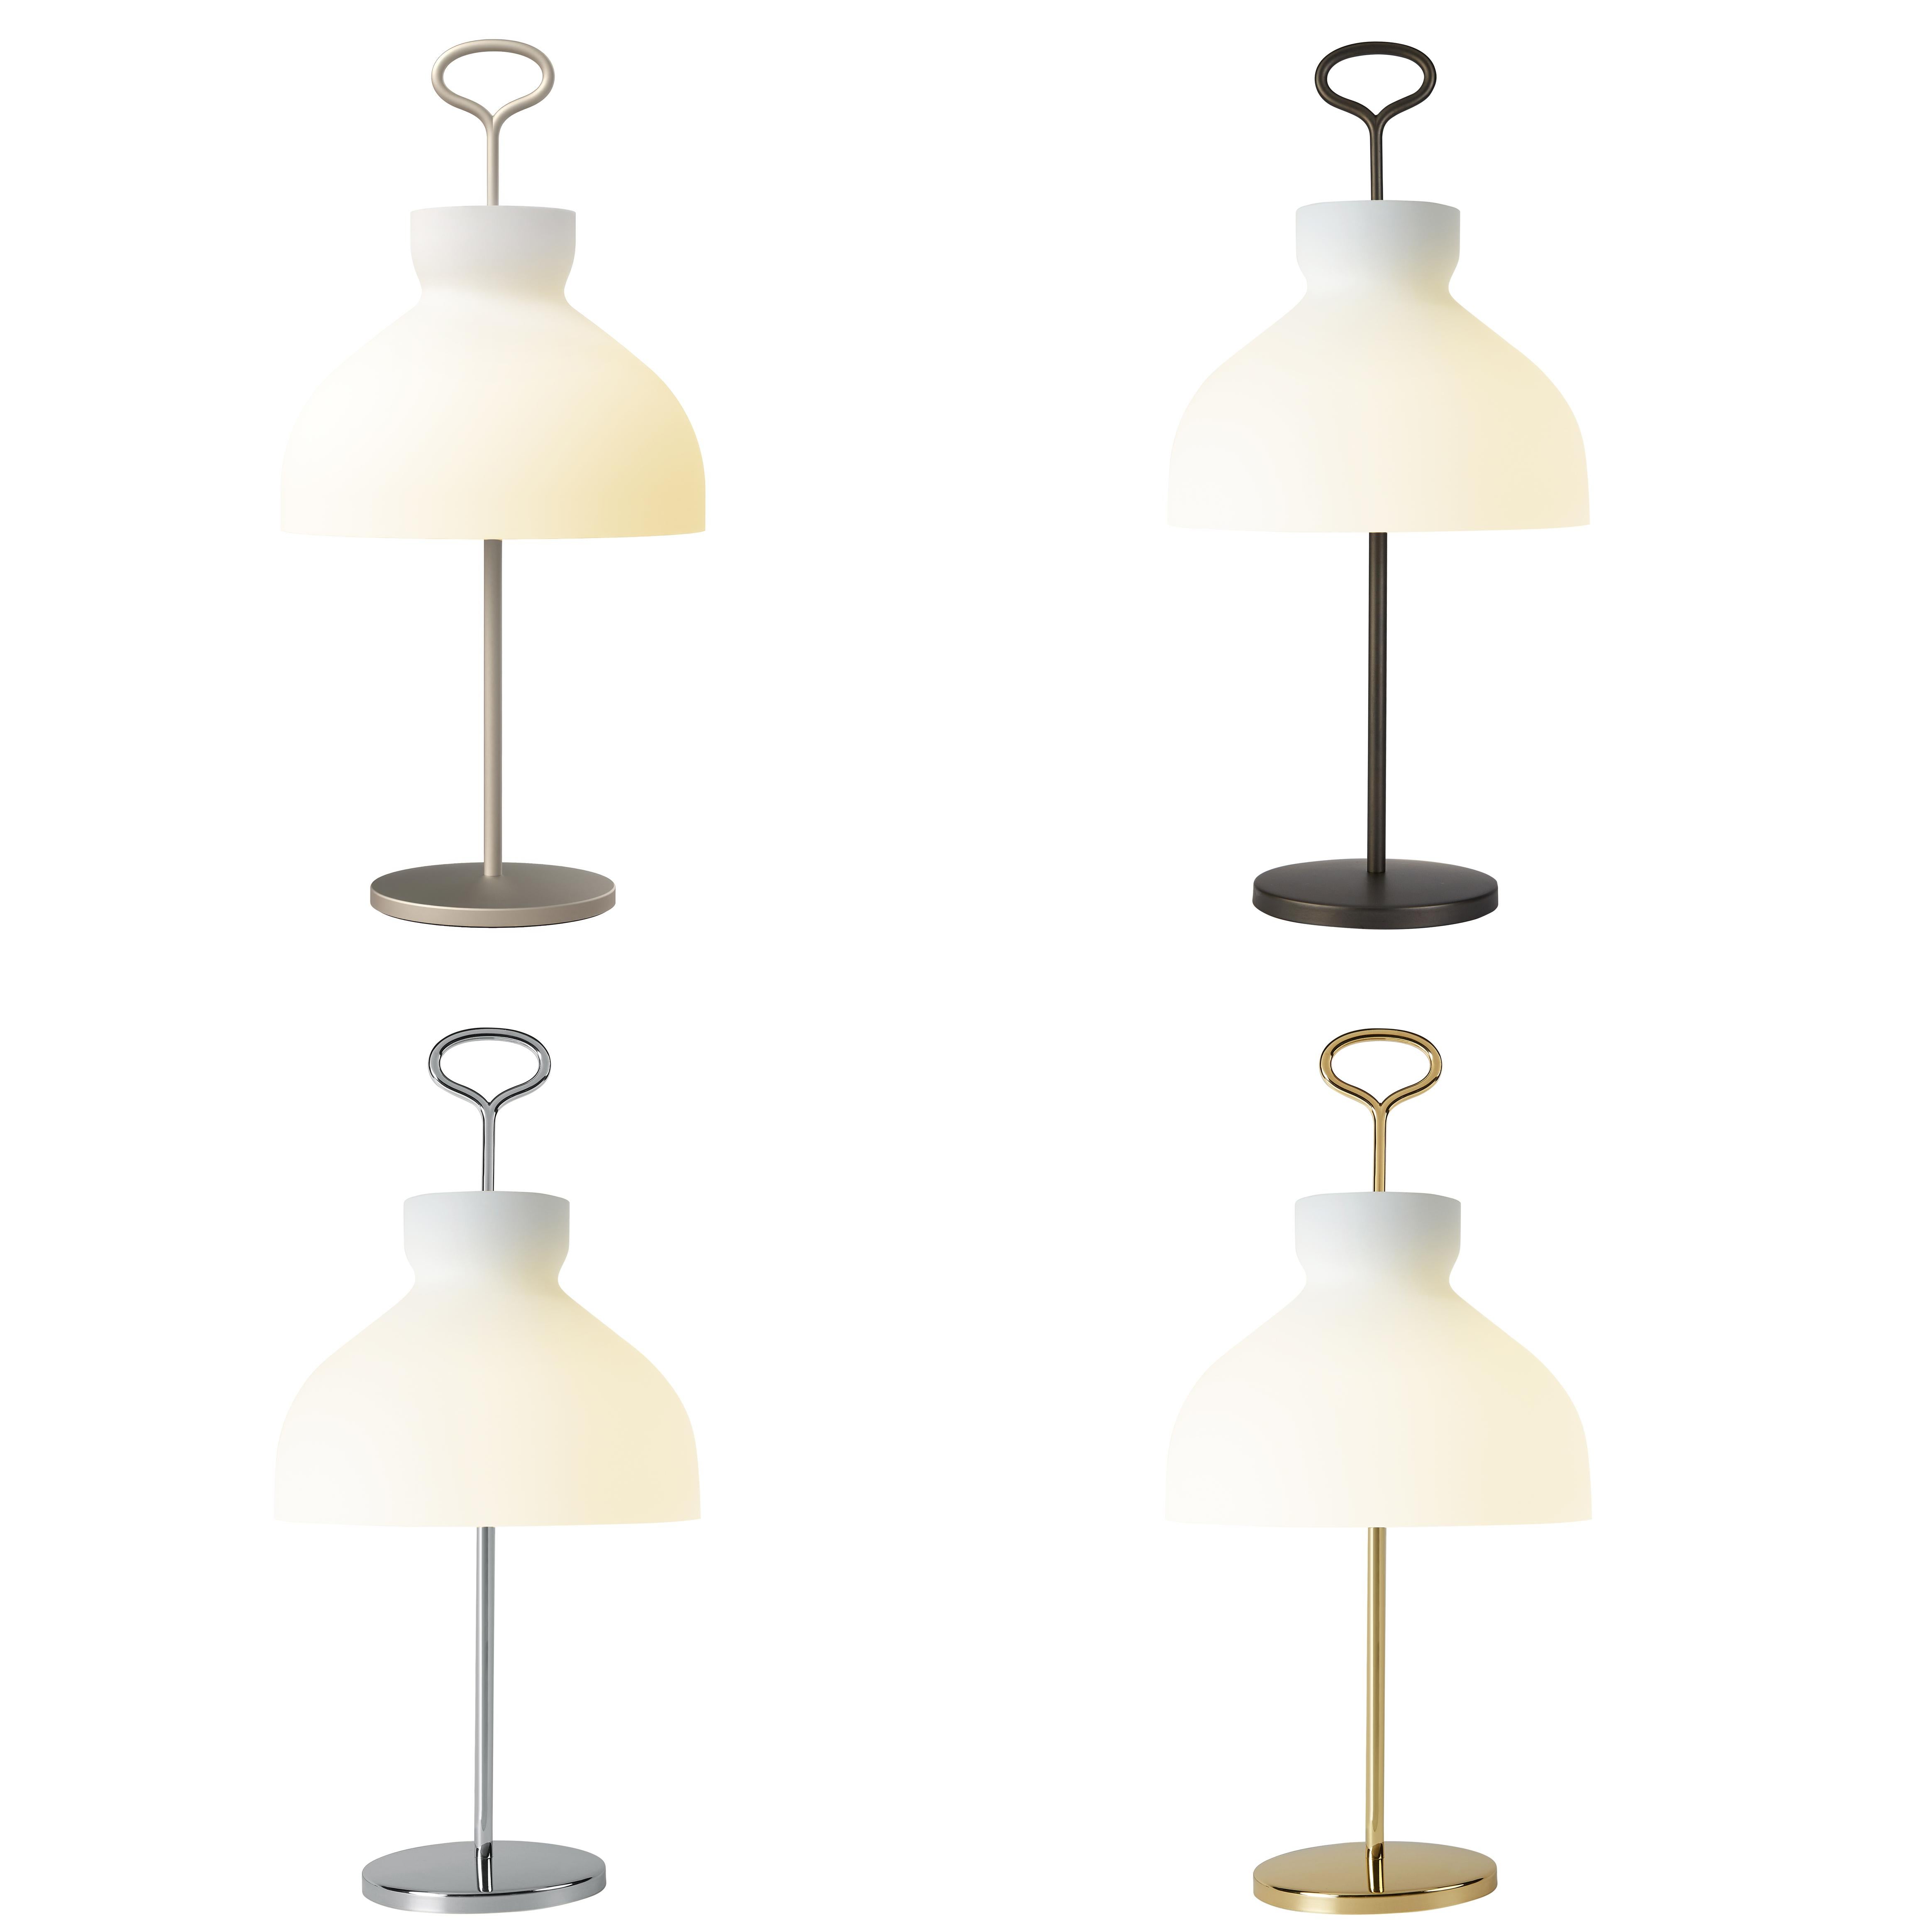 Opaline Glass Large Ignazio Gardella 'Arenzano' Table Lamp in Chrome and Glass for Tato Italia For Sale